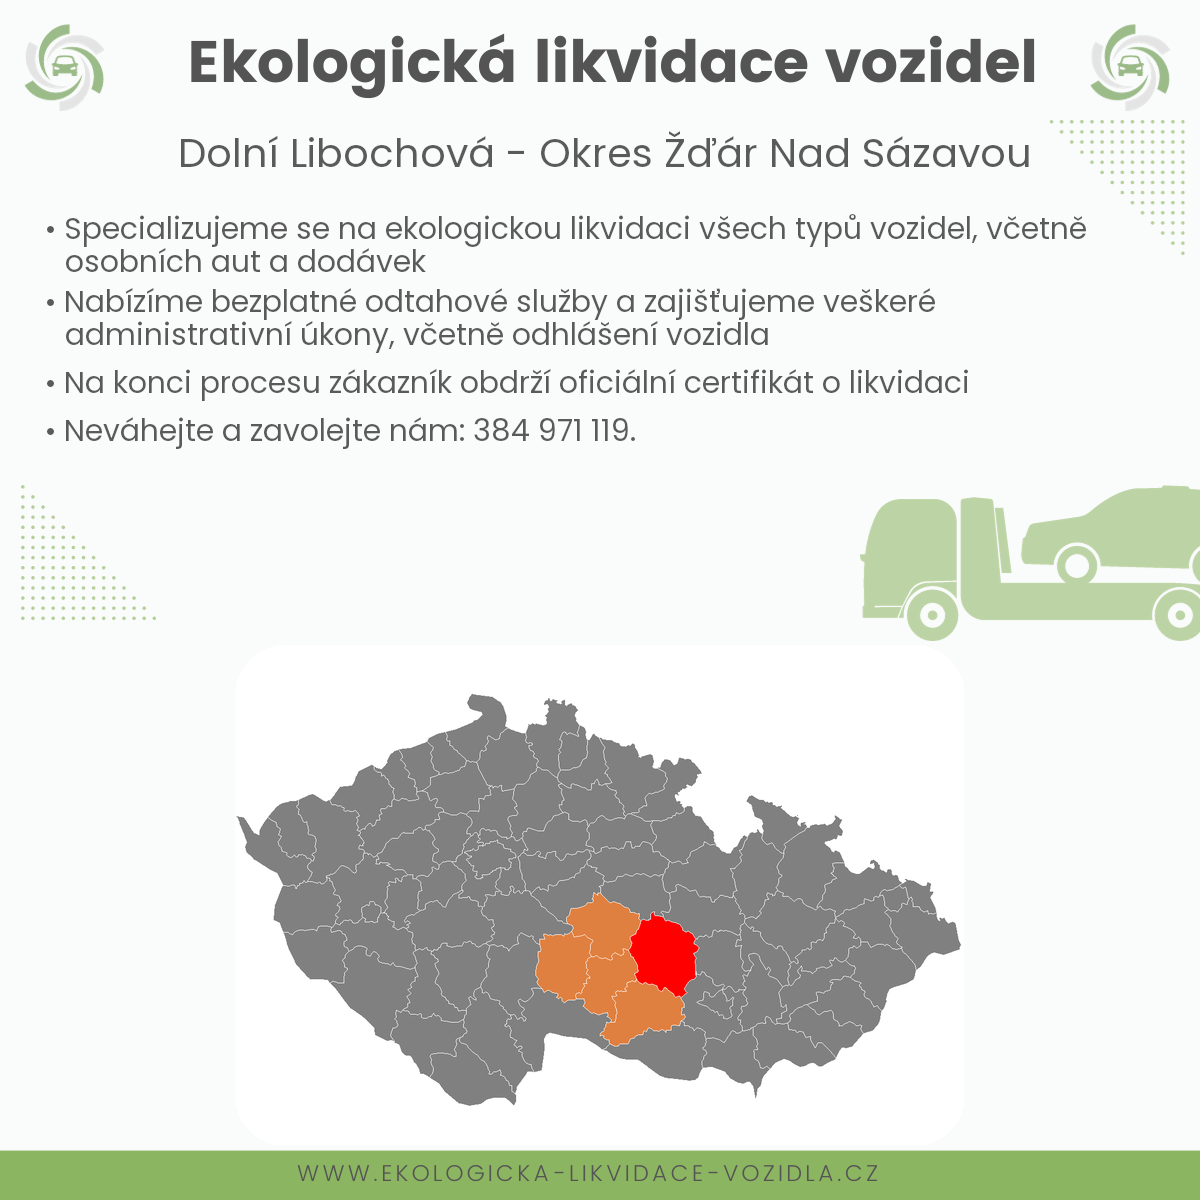 likvidace vozidel - Dolní Libochová